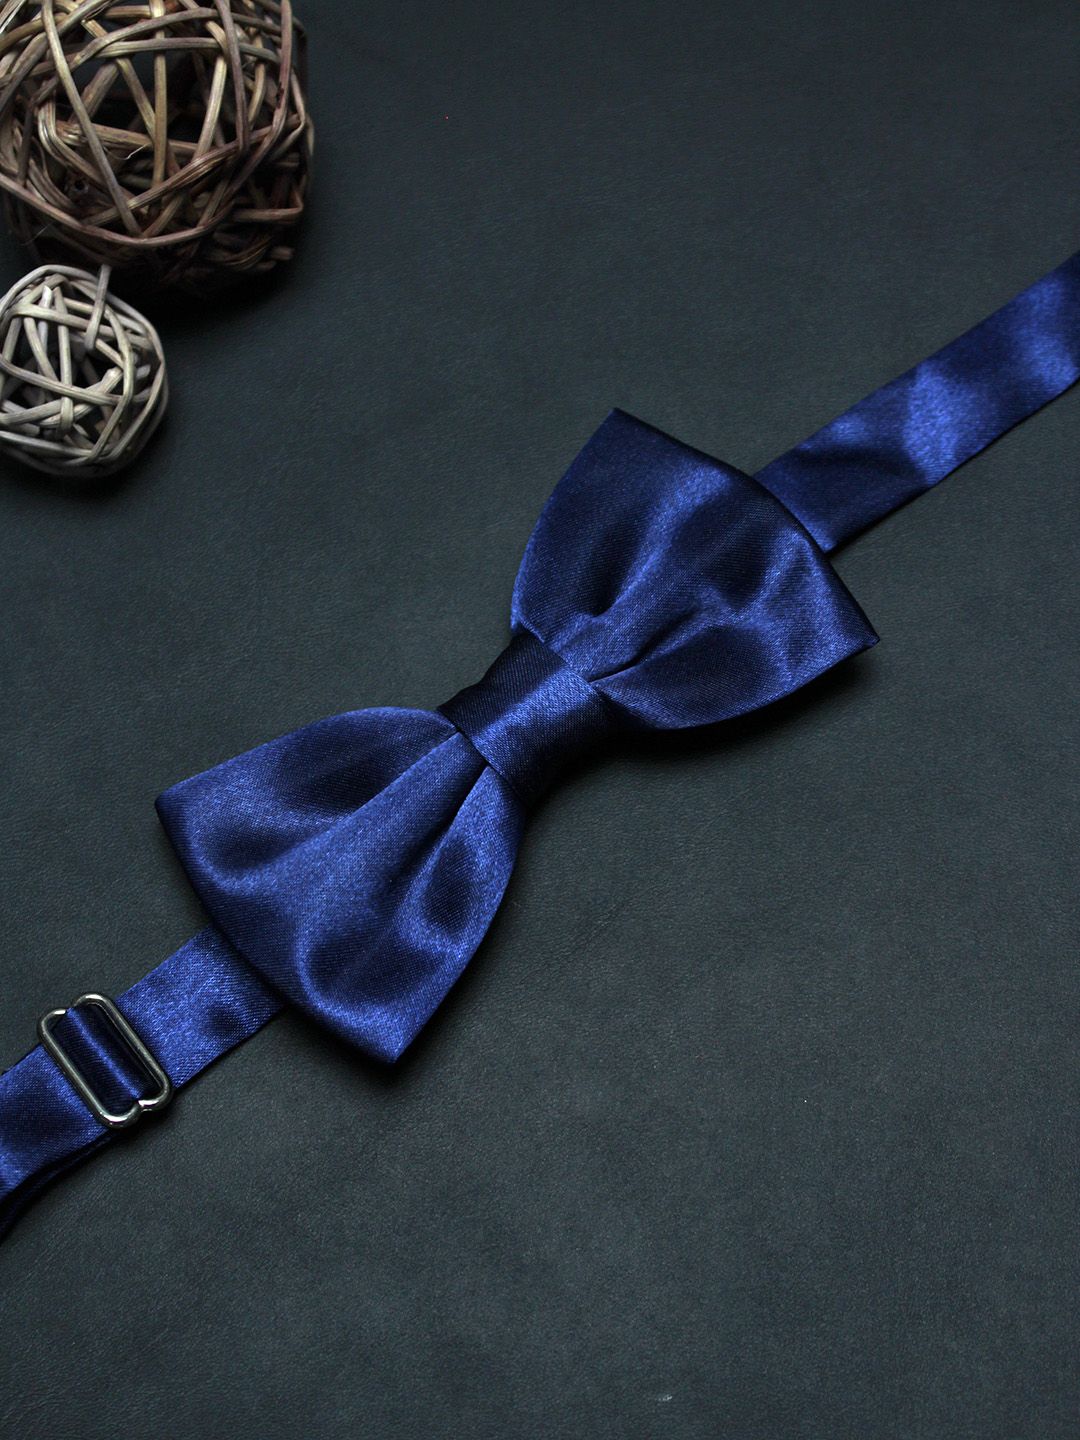 Solid Dark Royal Blue Bow Tie